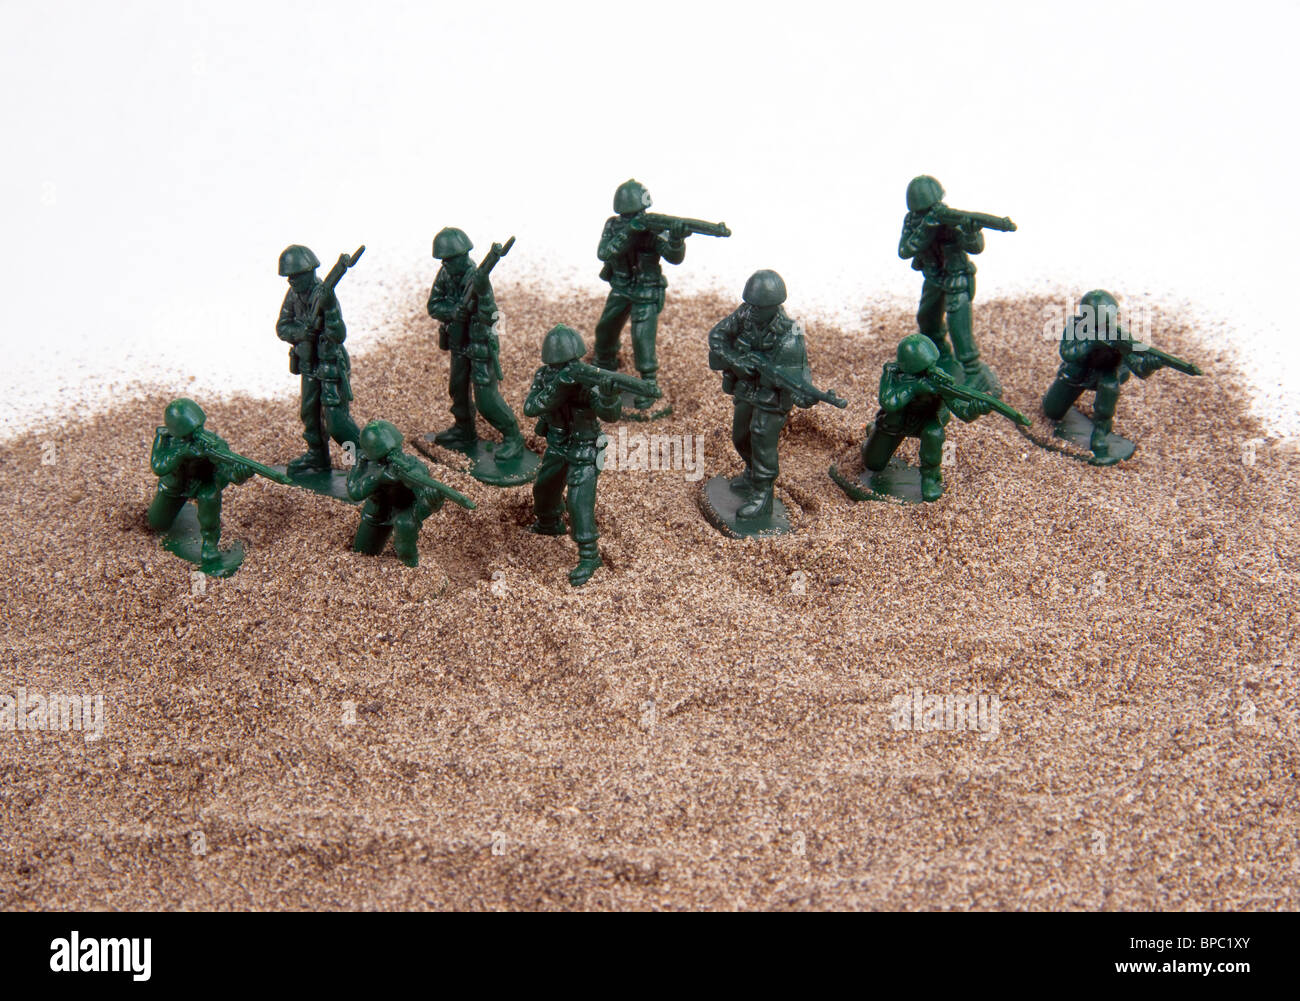 Un groupe de petits hommes de l'armée verte en plastique mis en place sur un sable sur un fond blanc. Banque D'Images